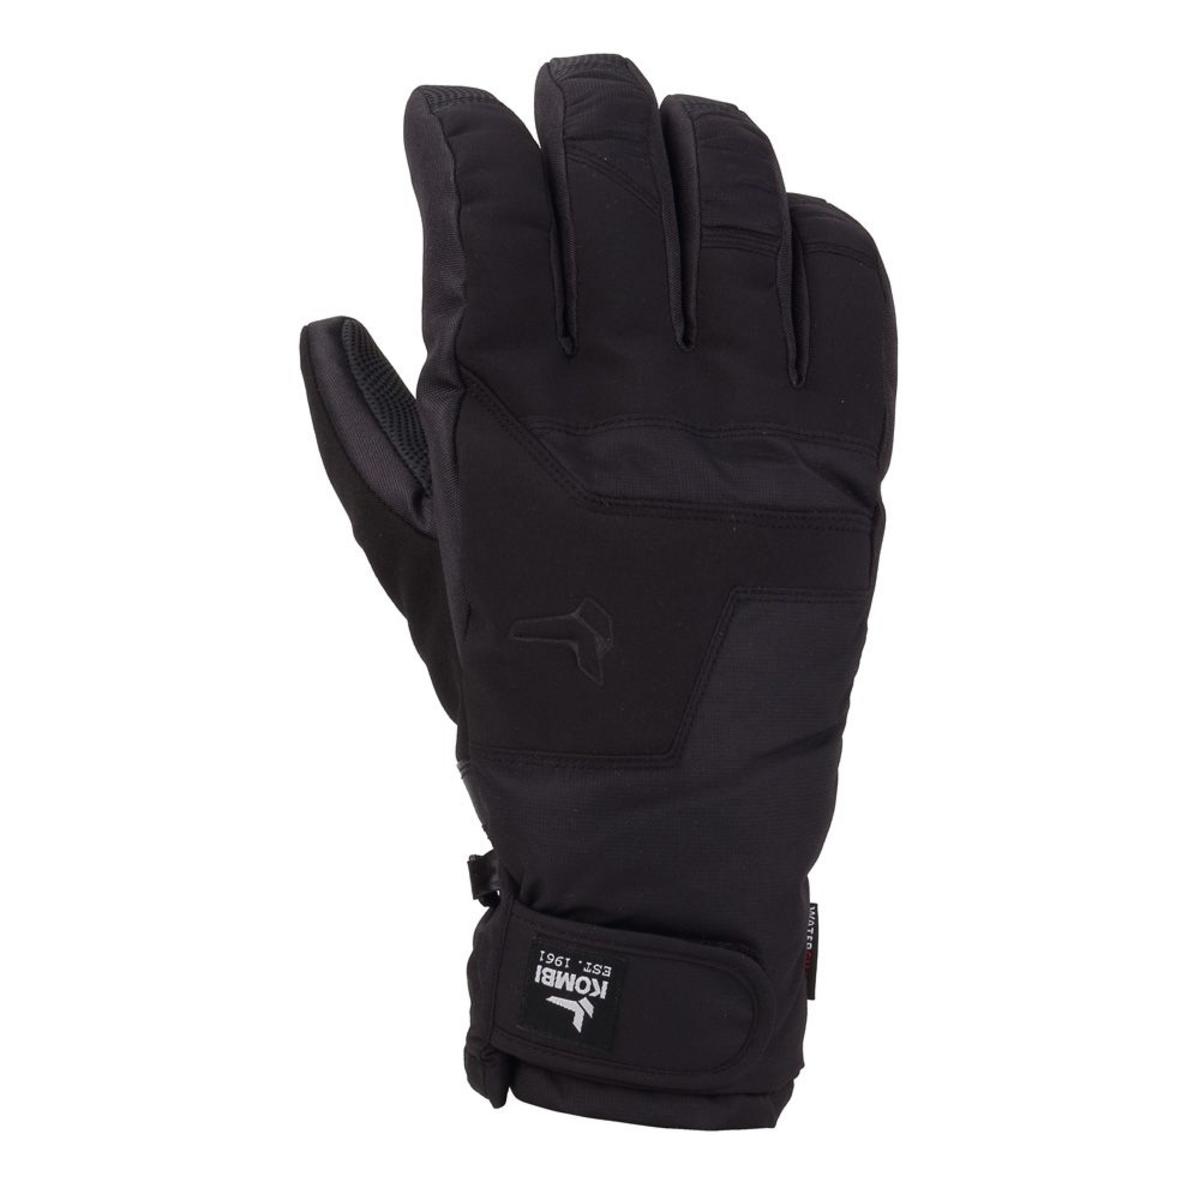 Kombi Men's Storm Cuff Short Gloves